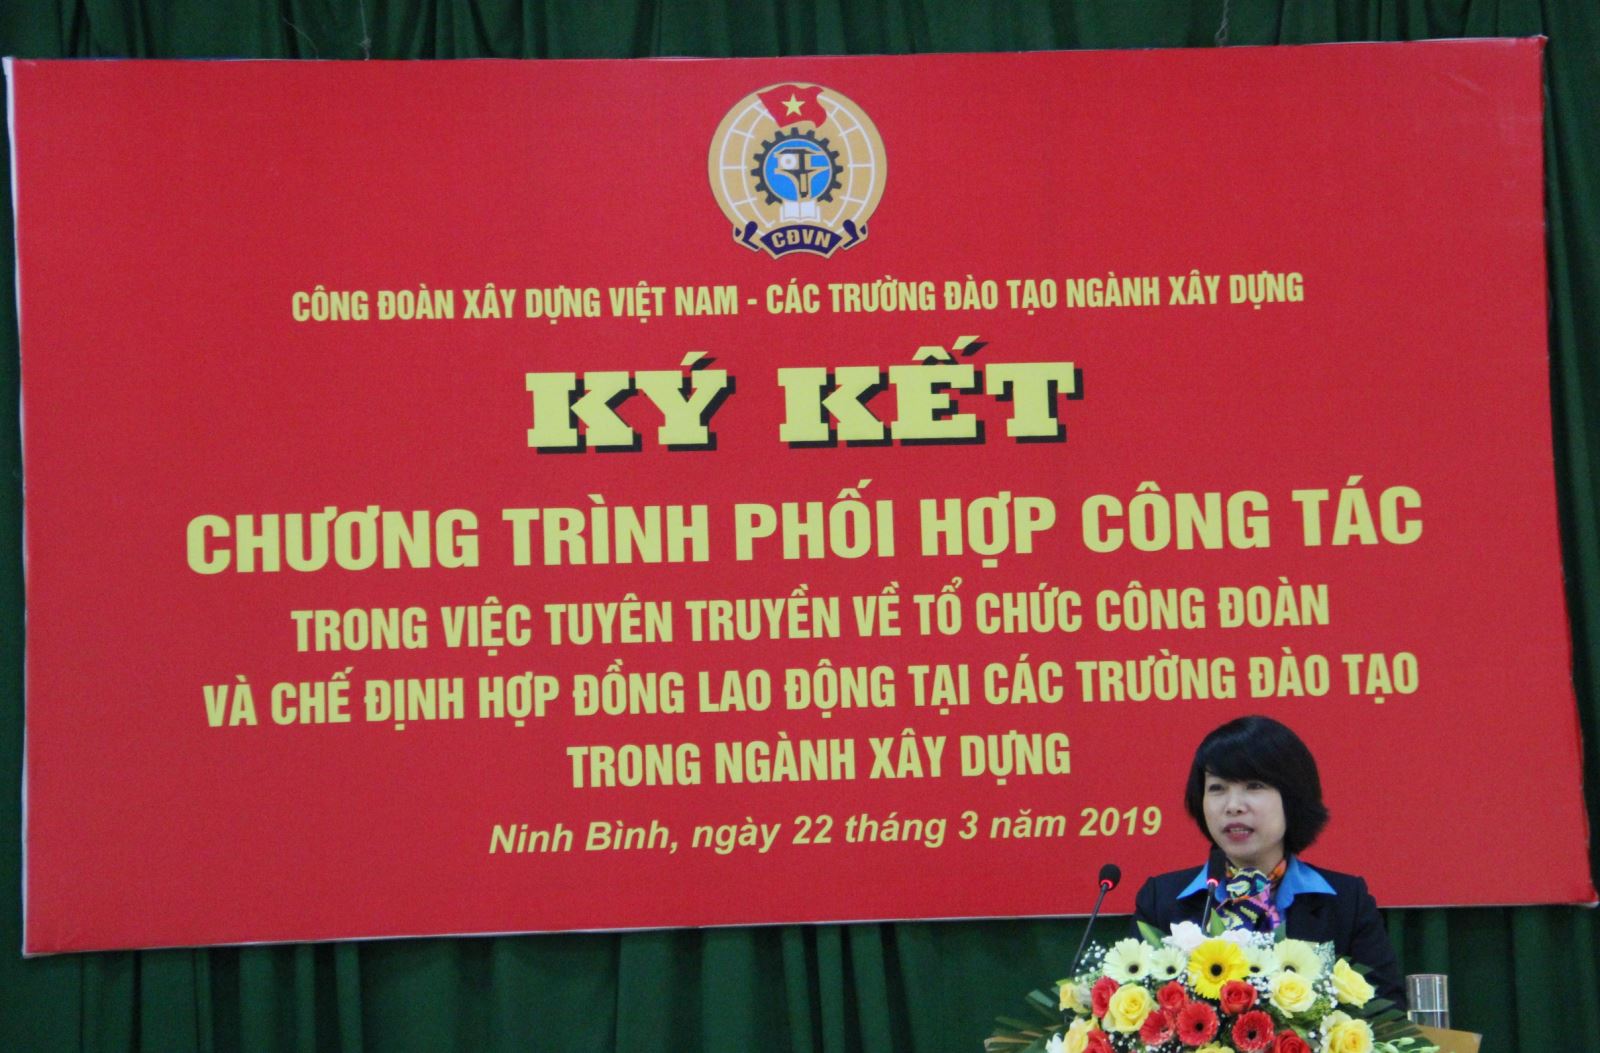 Đồng chí Nguyễn Thị Thủy Lệ, Chủ tịch CĐXDVN phát biểu tại buổi ký kết